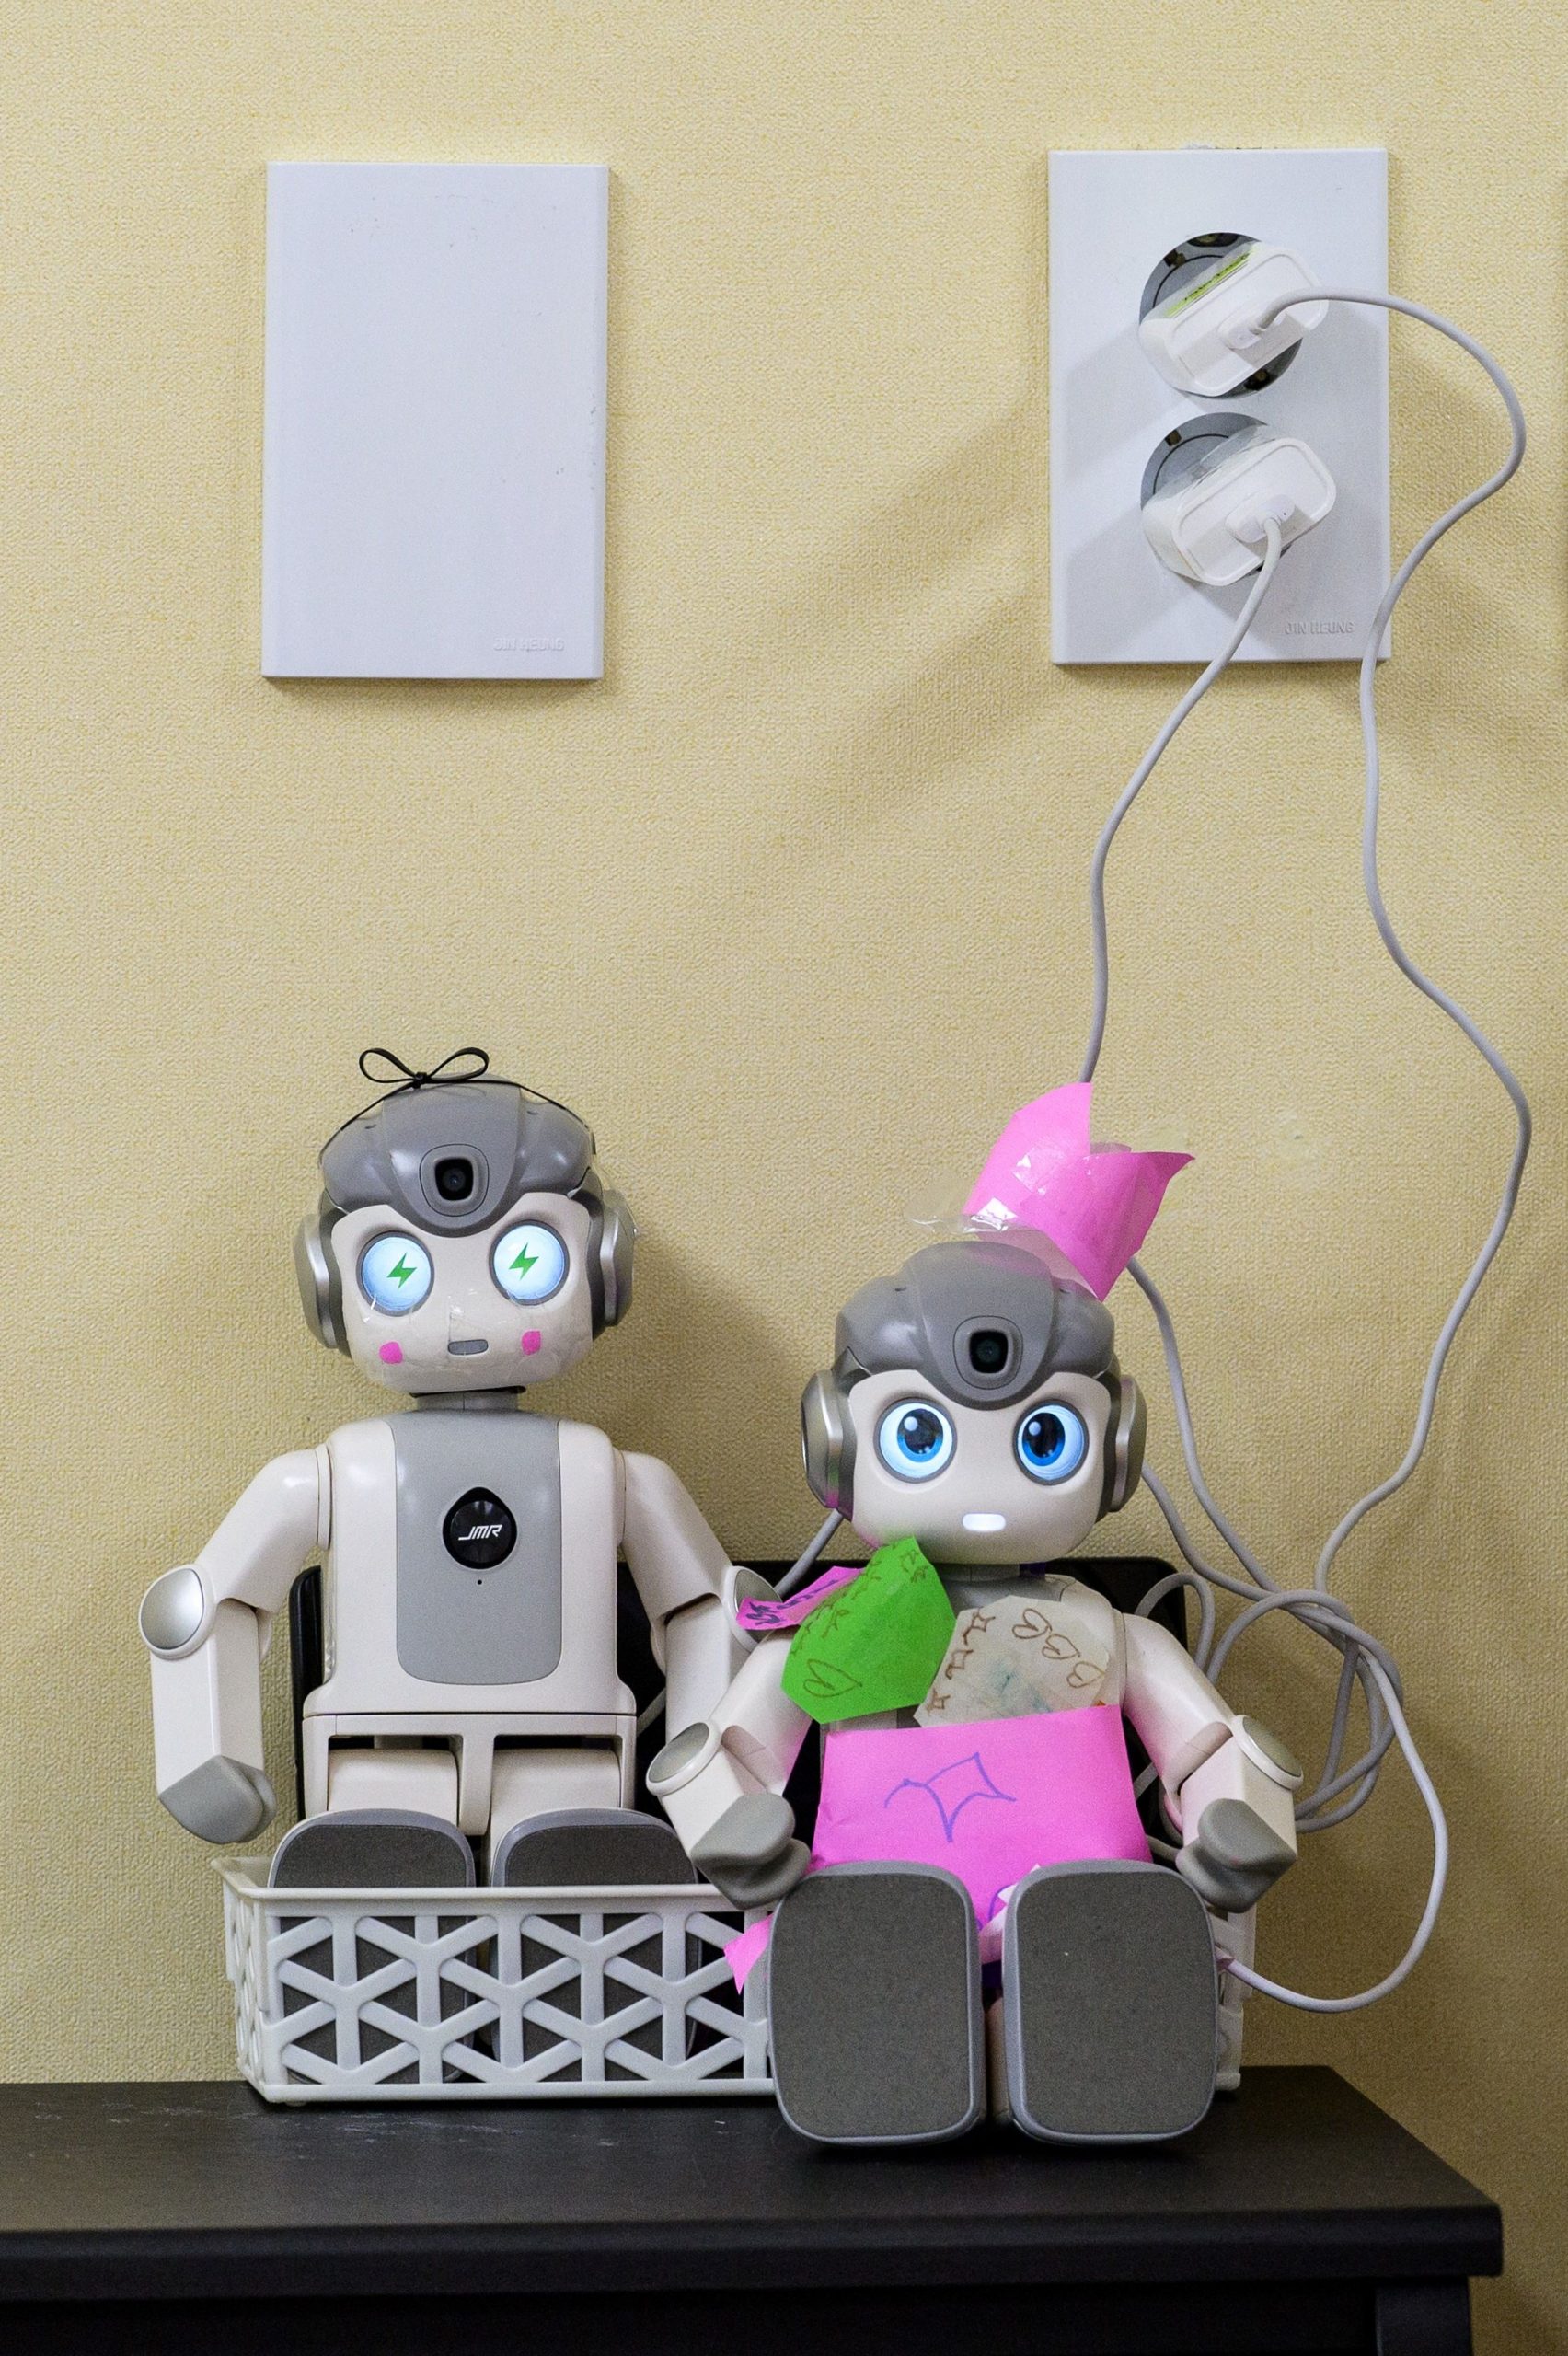 拚图两图 为高科技未来铺路 韩国幼儿园试行机器人小导师